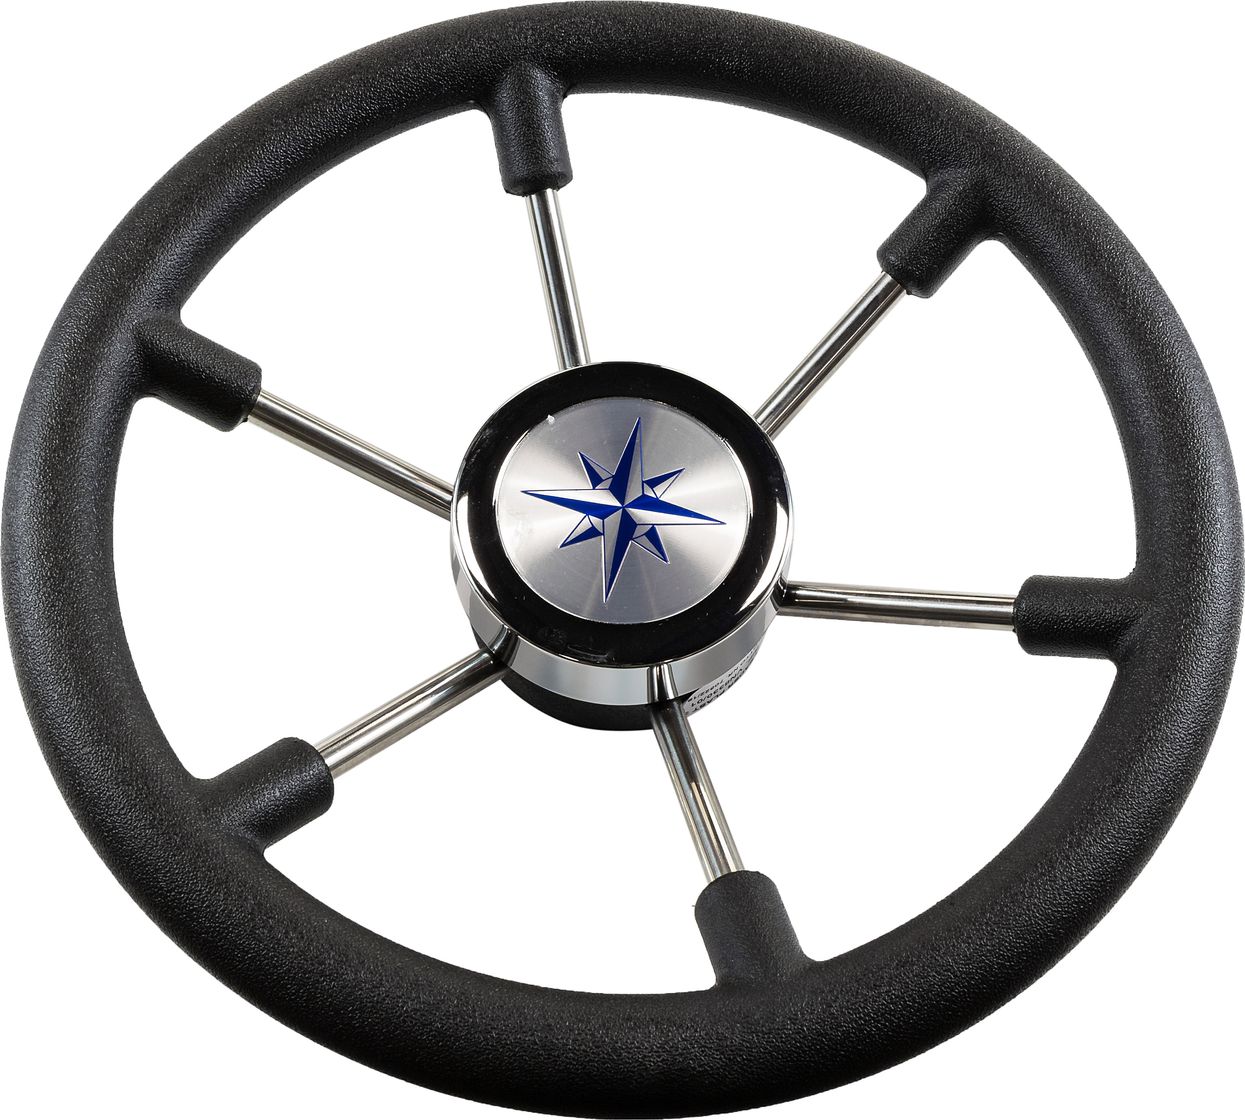 Рулевое колесо LEADER PLAST черный обод серебряные спицы д. 330 мм VN8330-01 рулевое колесо orion обод спицы серебряные д 340 мм vn934122 01